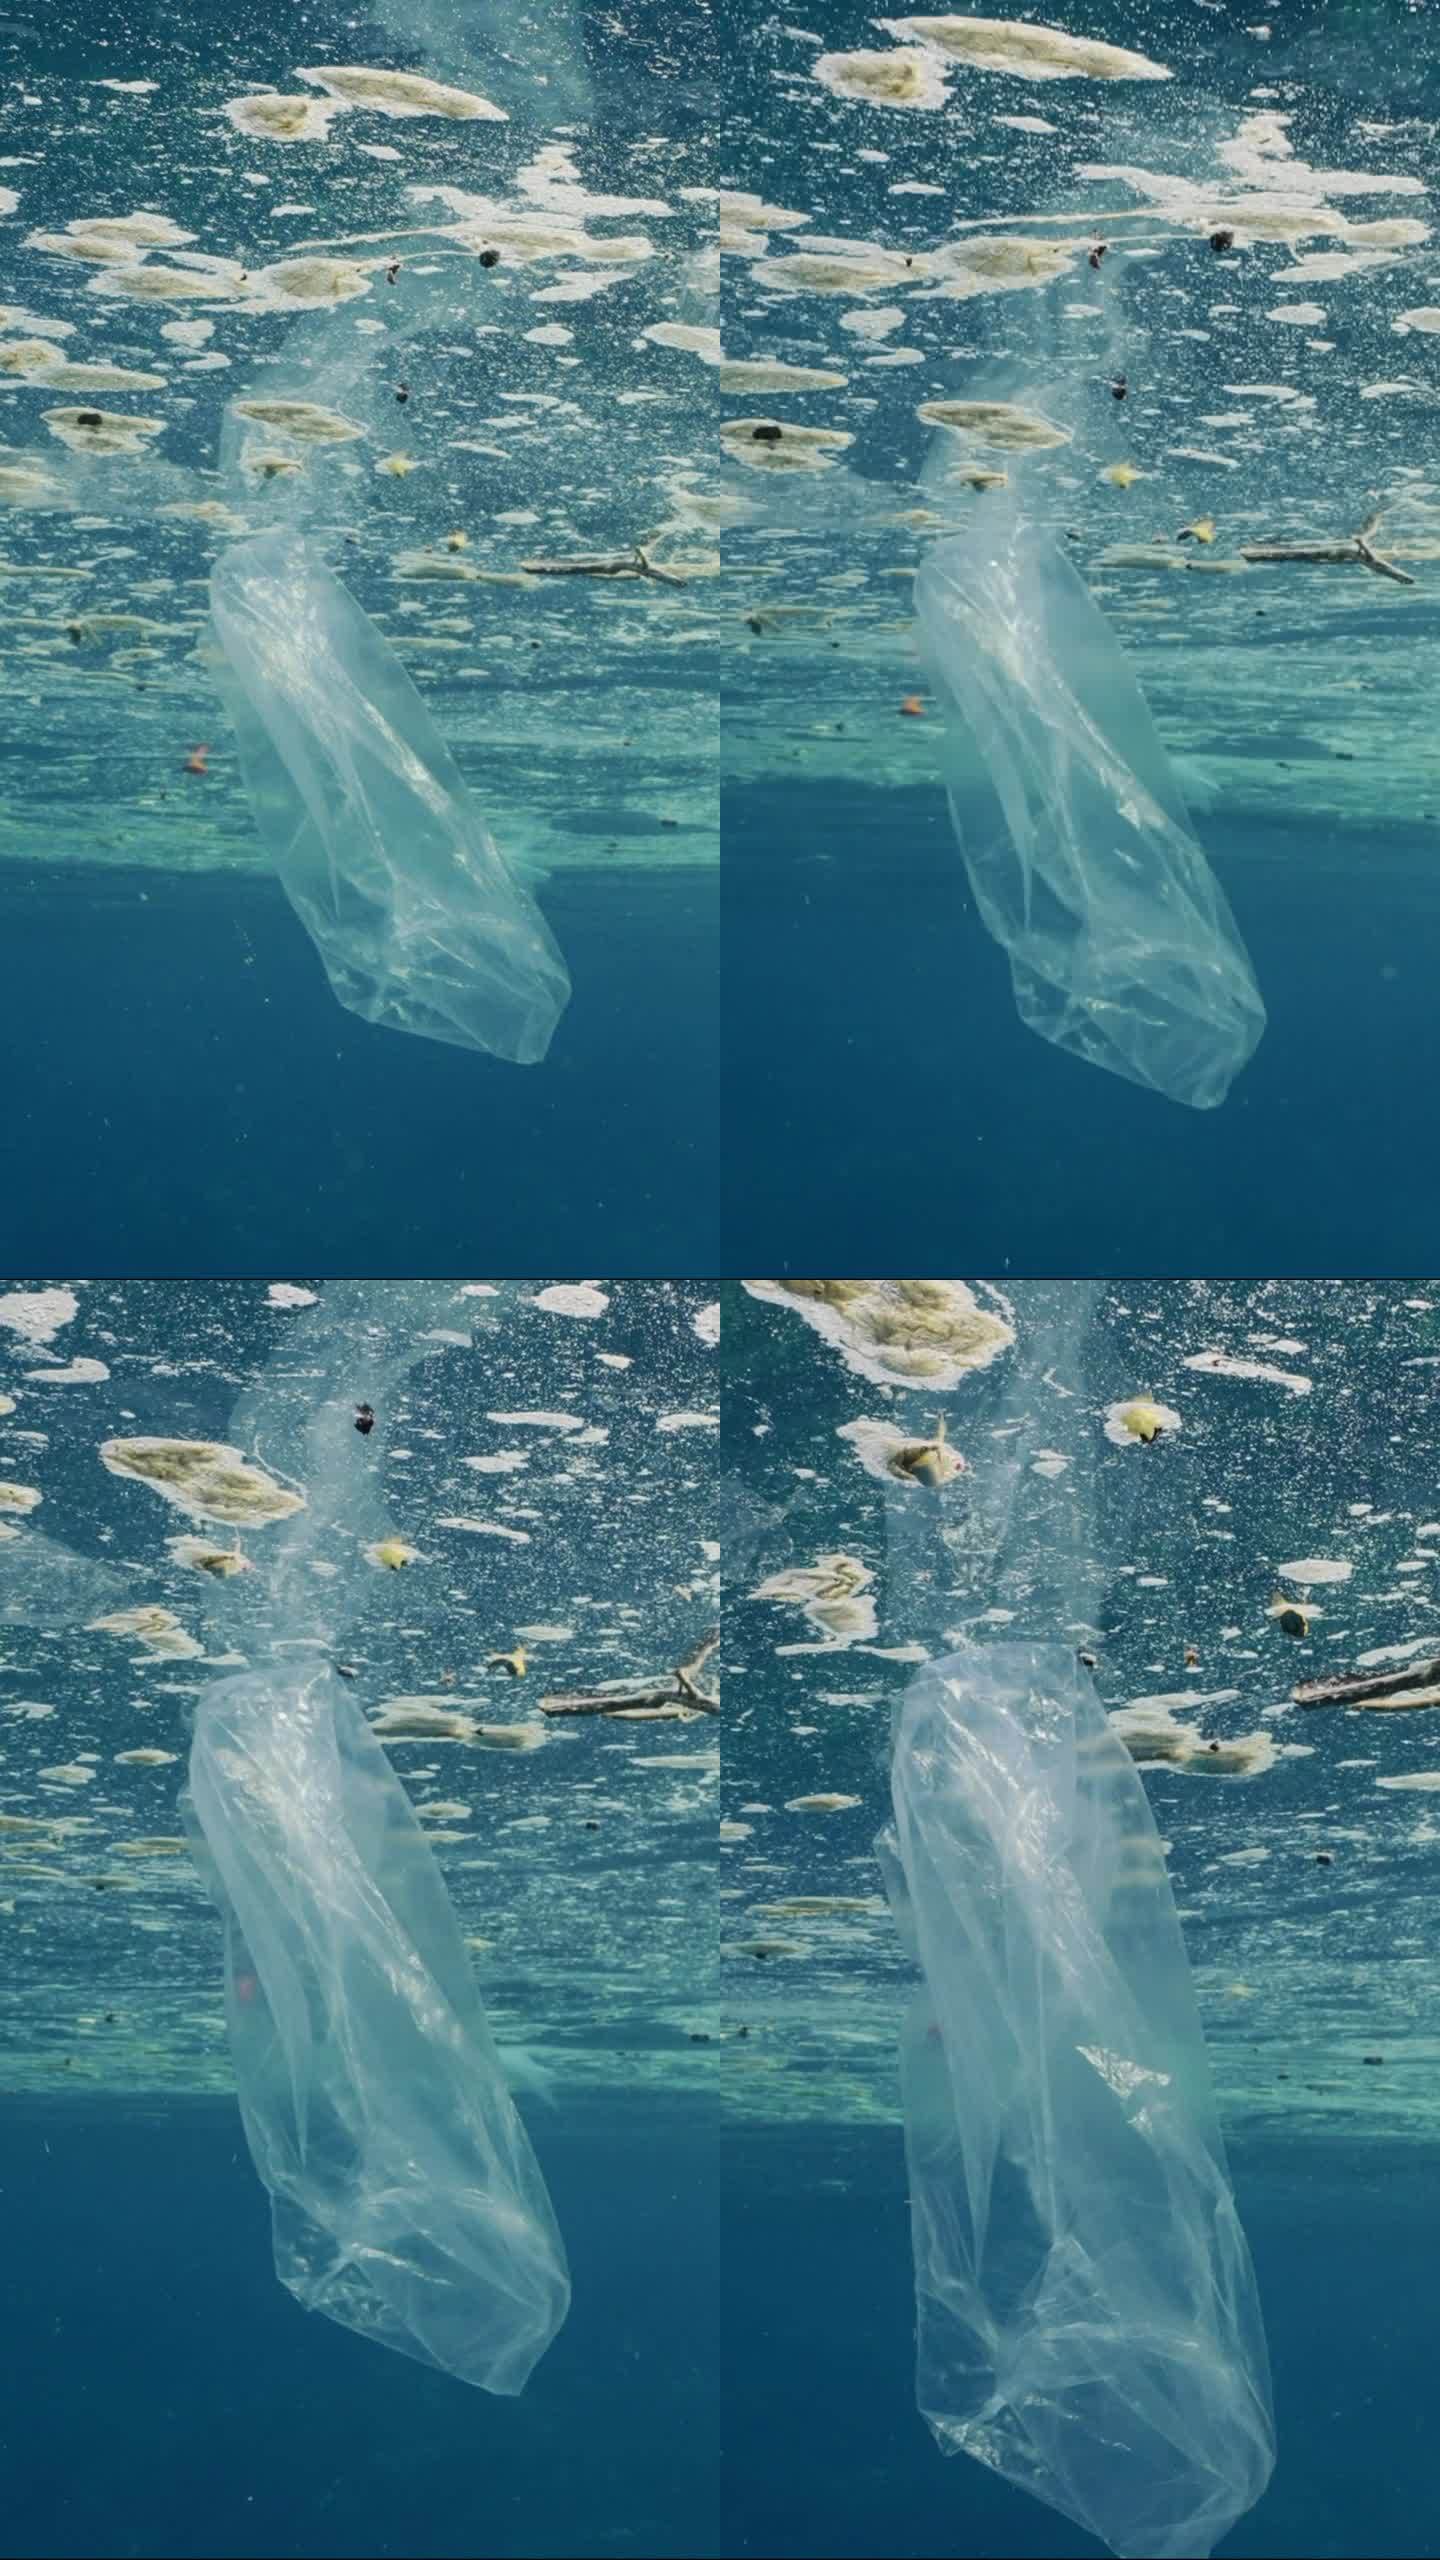 海洋表面脂肪层中漂浮的塑料碎片近景